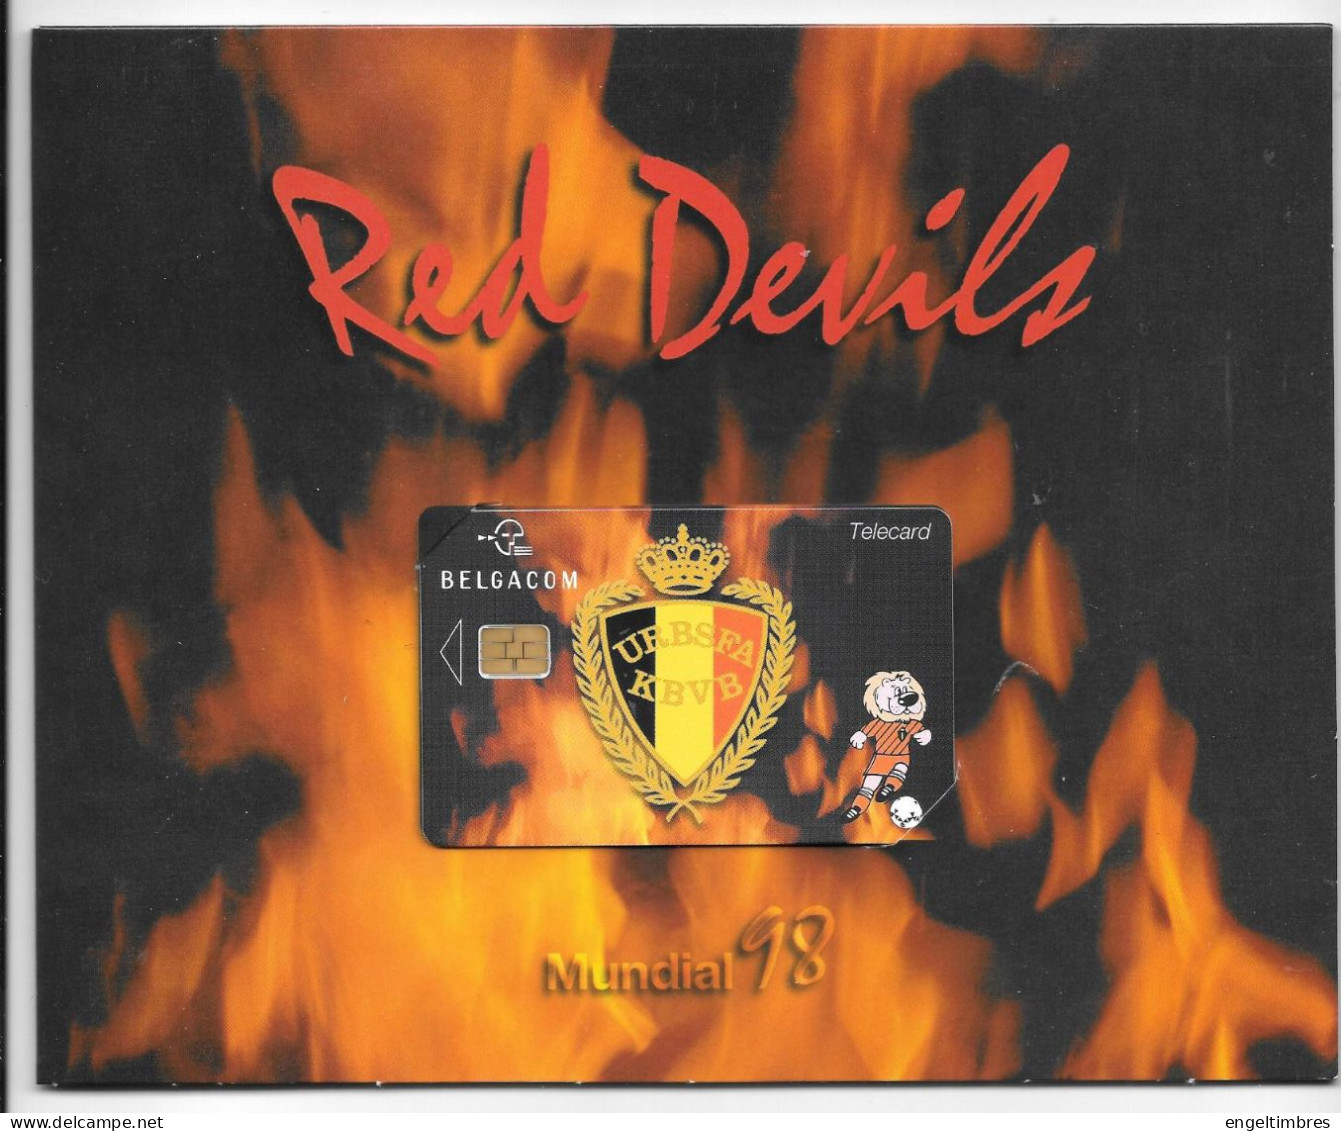 1998 MUNDIAL - RED DEVILS TELEFOON KAARTEN (5) IN FOLDER _ ZIE SCANS - Avec Puce